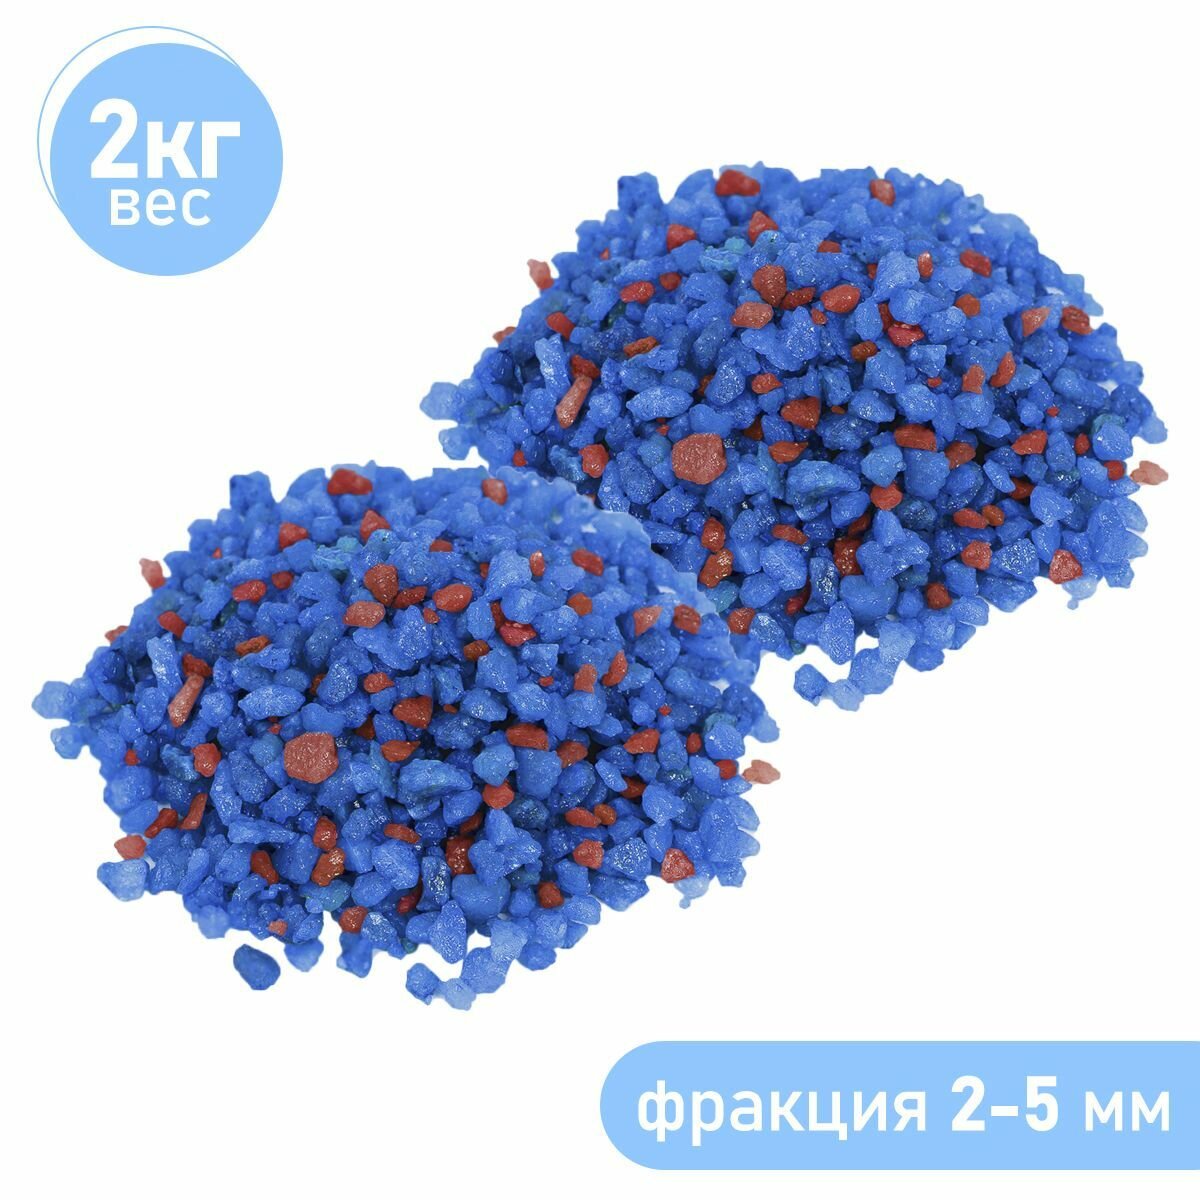 Натуральный грунт для аквариума террариума палюдариума, для суккулентов и растений, Zoo One, природный материал, "Синий+бордо" (фракция 2-5 мм), Вес: 1кг, набор из 2 шт, 15-0005-2